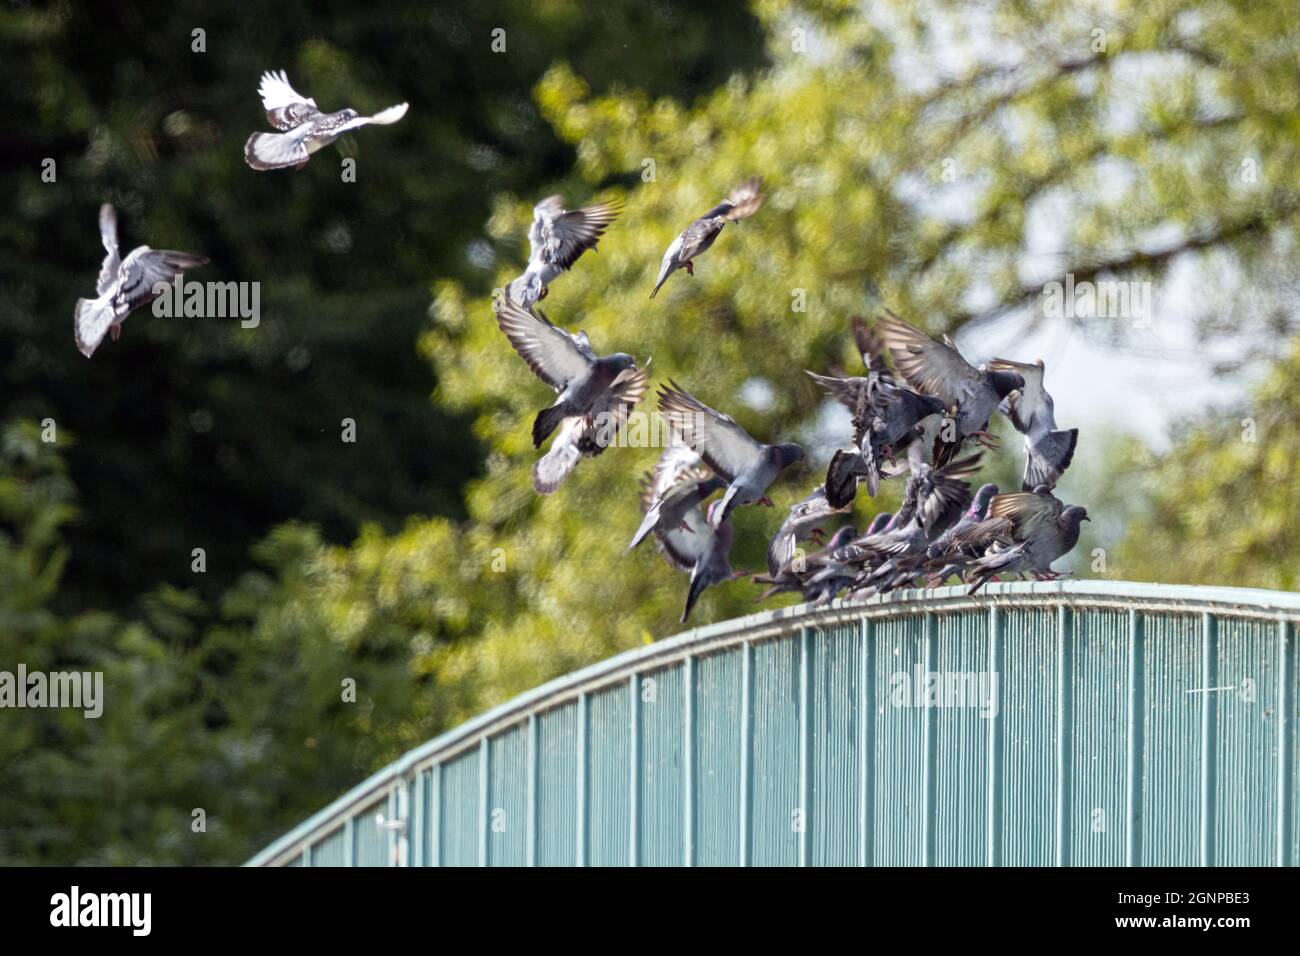 Piccione domestico, piccione ferale (Columba livia F. domestica), molti piccioni che atterrano su una ringhiera a ponte, Germania, Baviera Foto Stock